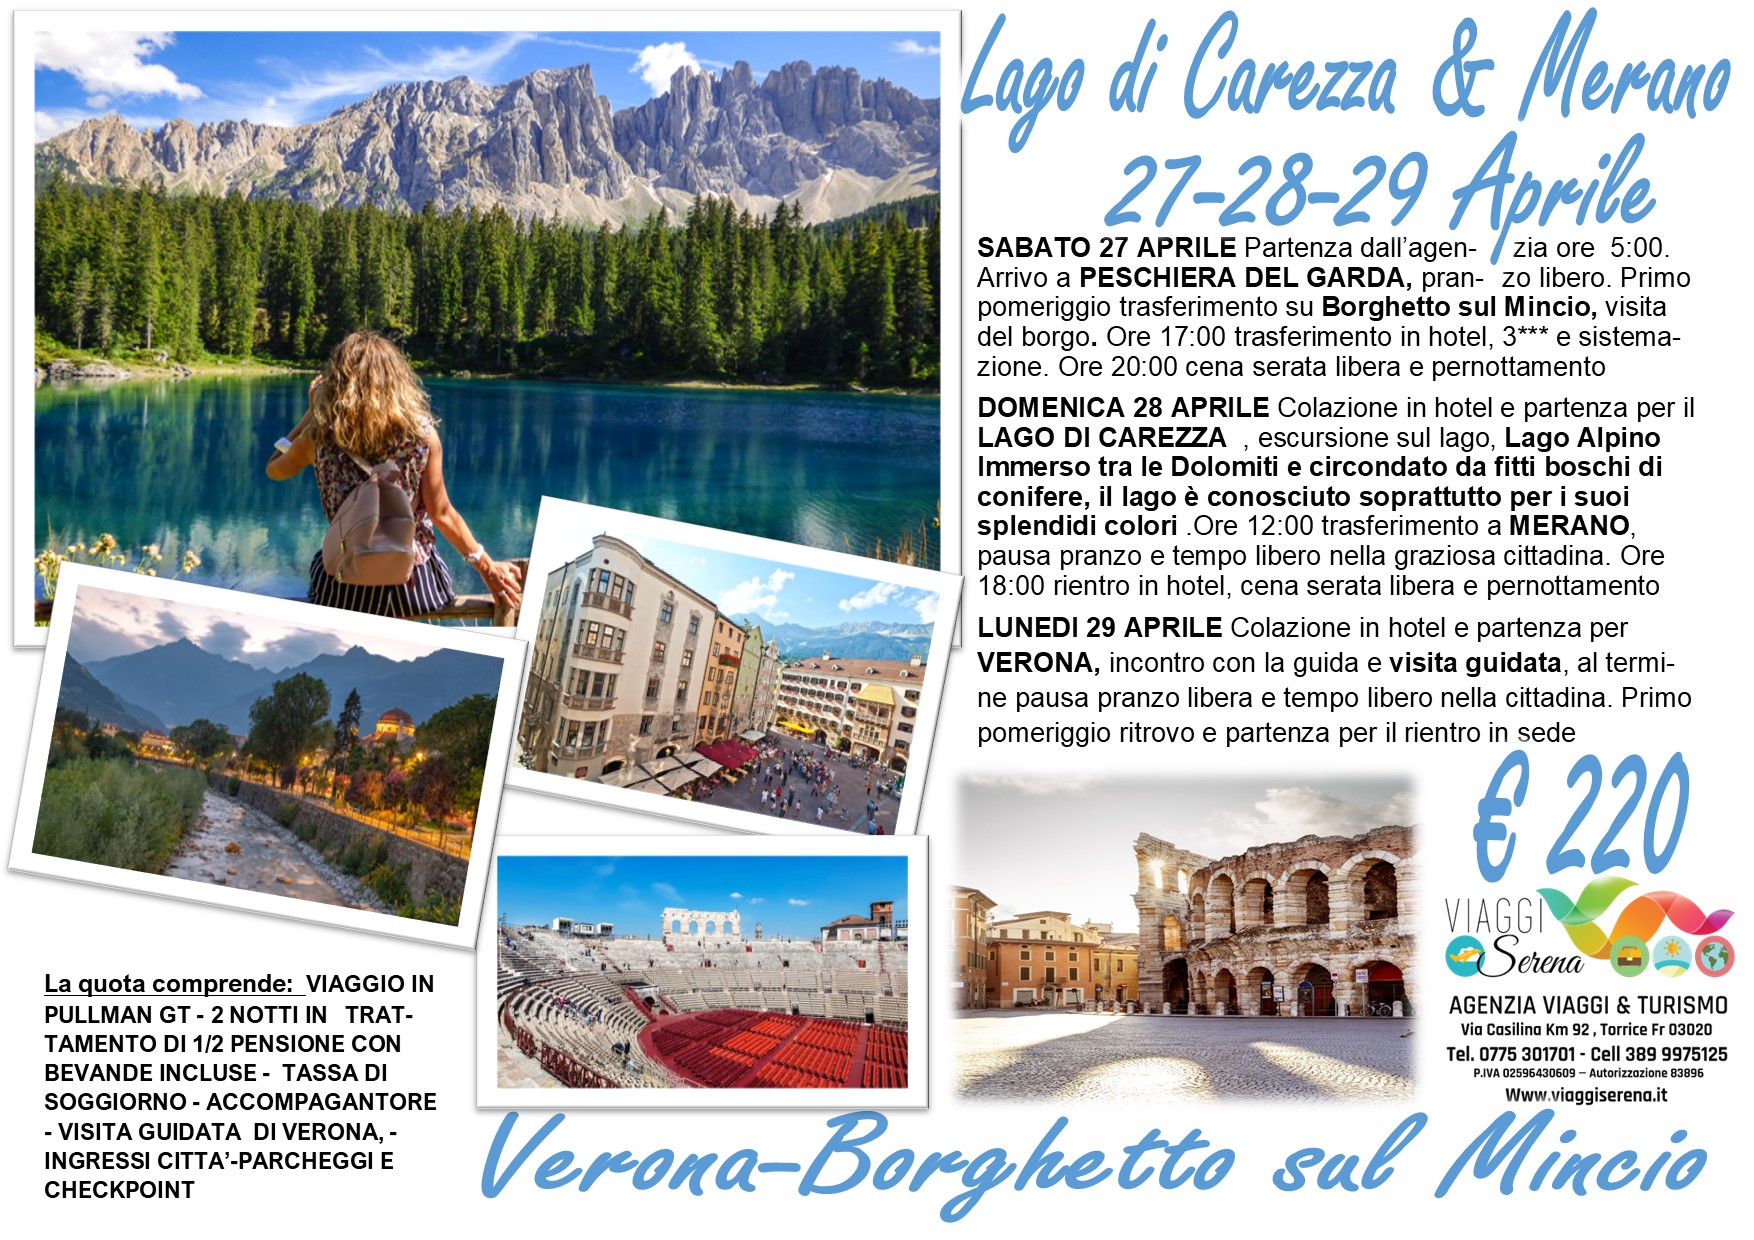 Viaggi di gruppo: Lago di Carezza, Verona, Merano & Borghetto sul Mincio 27-28-29 Aprile €220